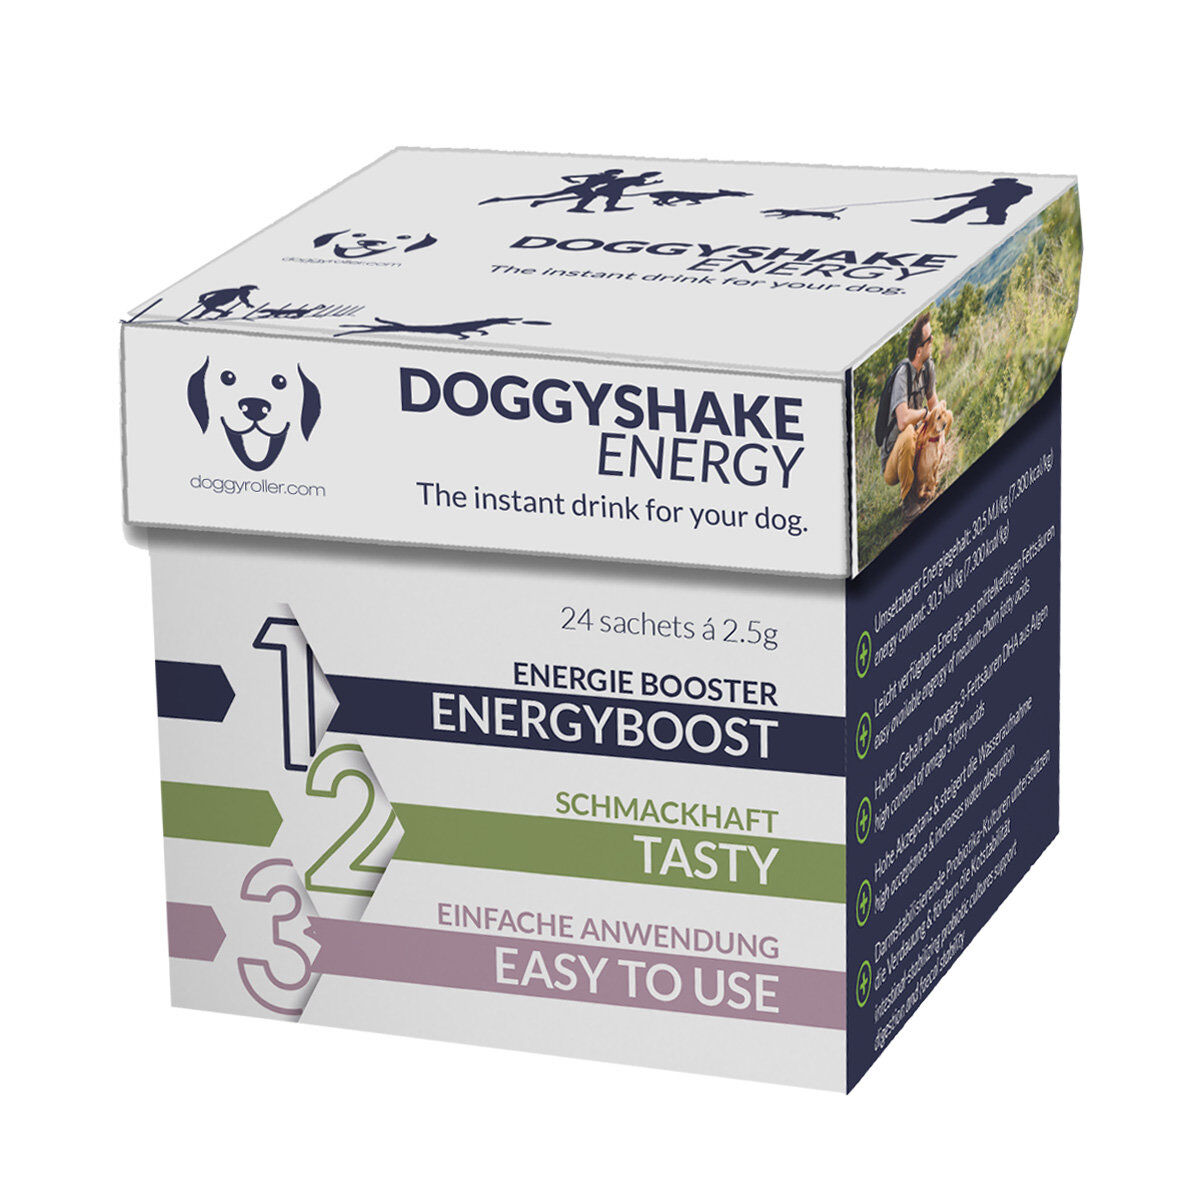 Doggyroller-Doggyshake-Energy-Hund-getraenk-63-26036